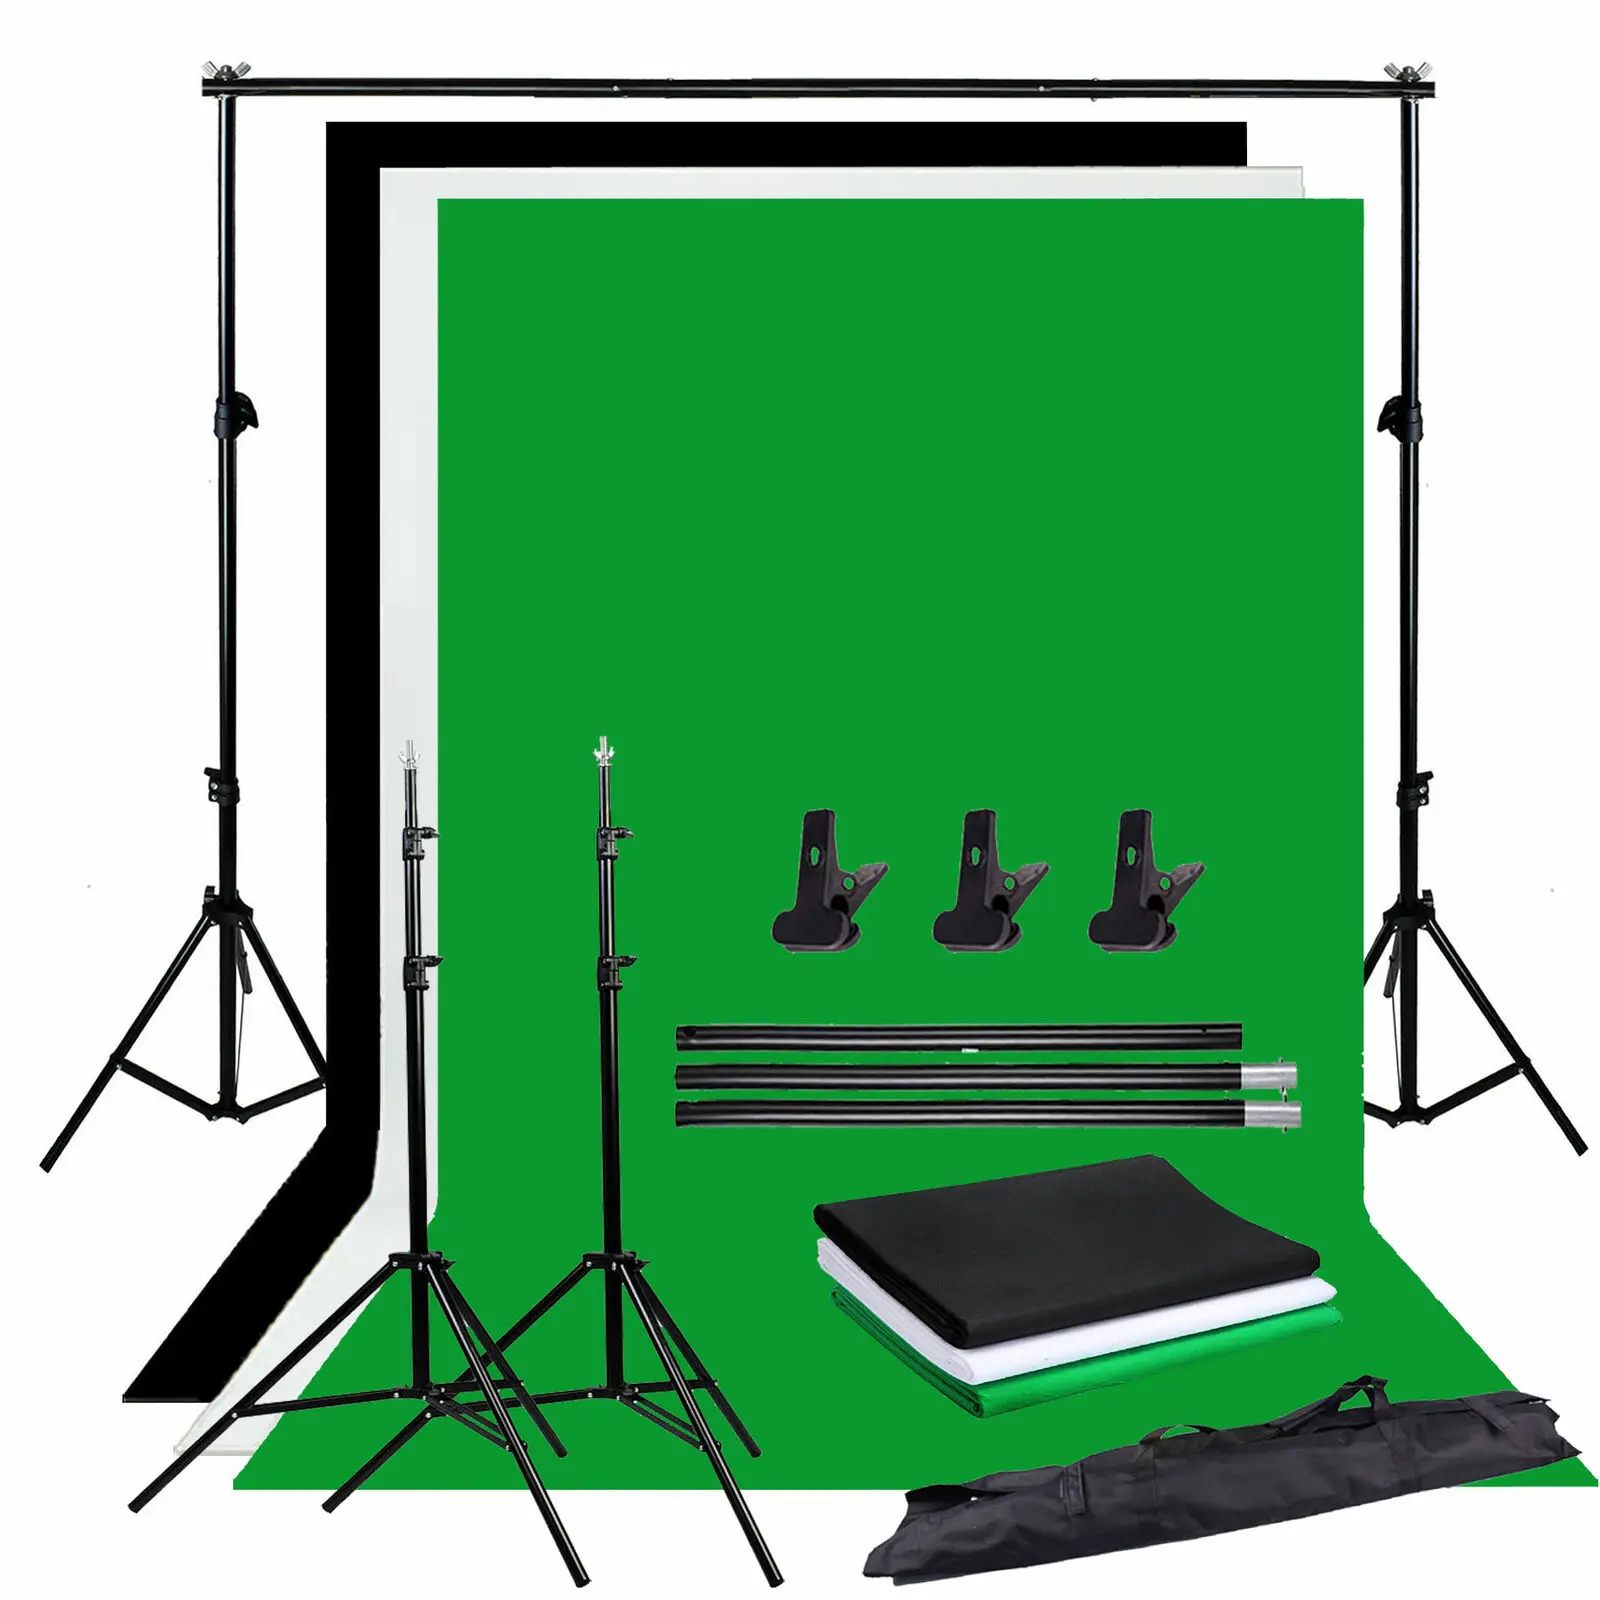 ZUOCHEN фото студия фон Chroma ключ Черный Белый Зеленый экран фоновая подставка комплект с 2 м студия фон поддержка Комплект